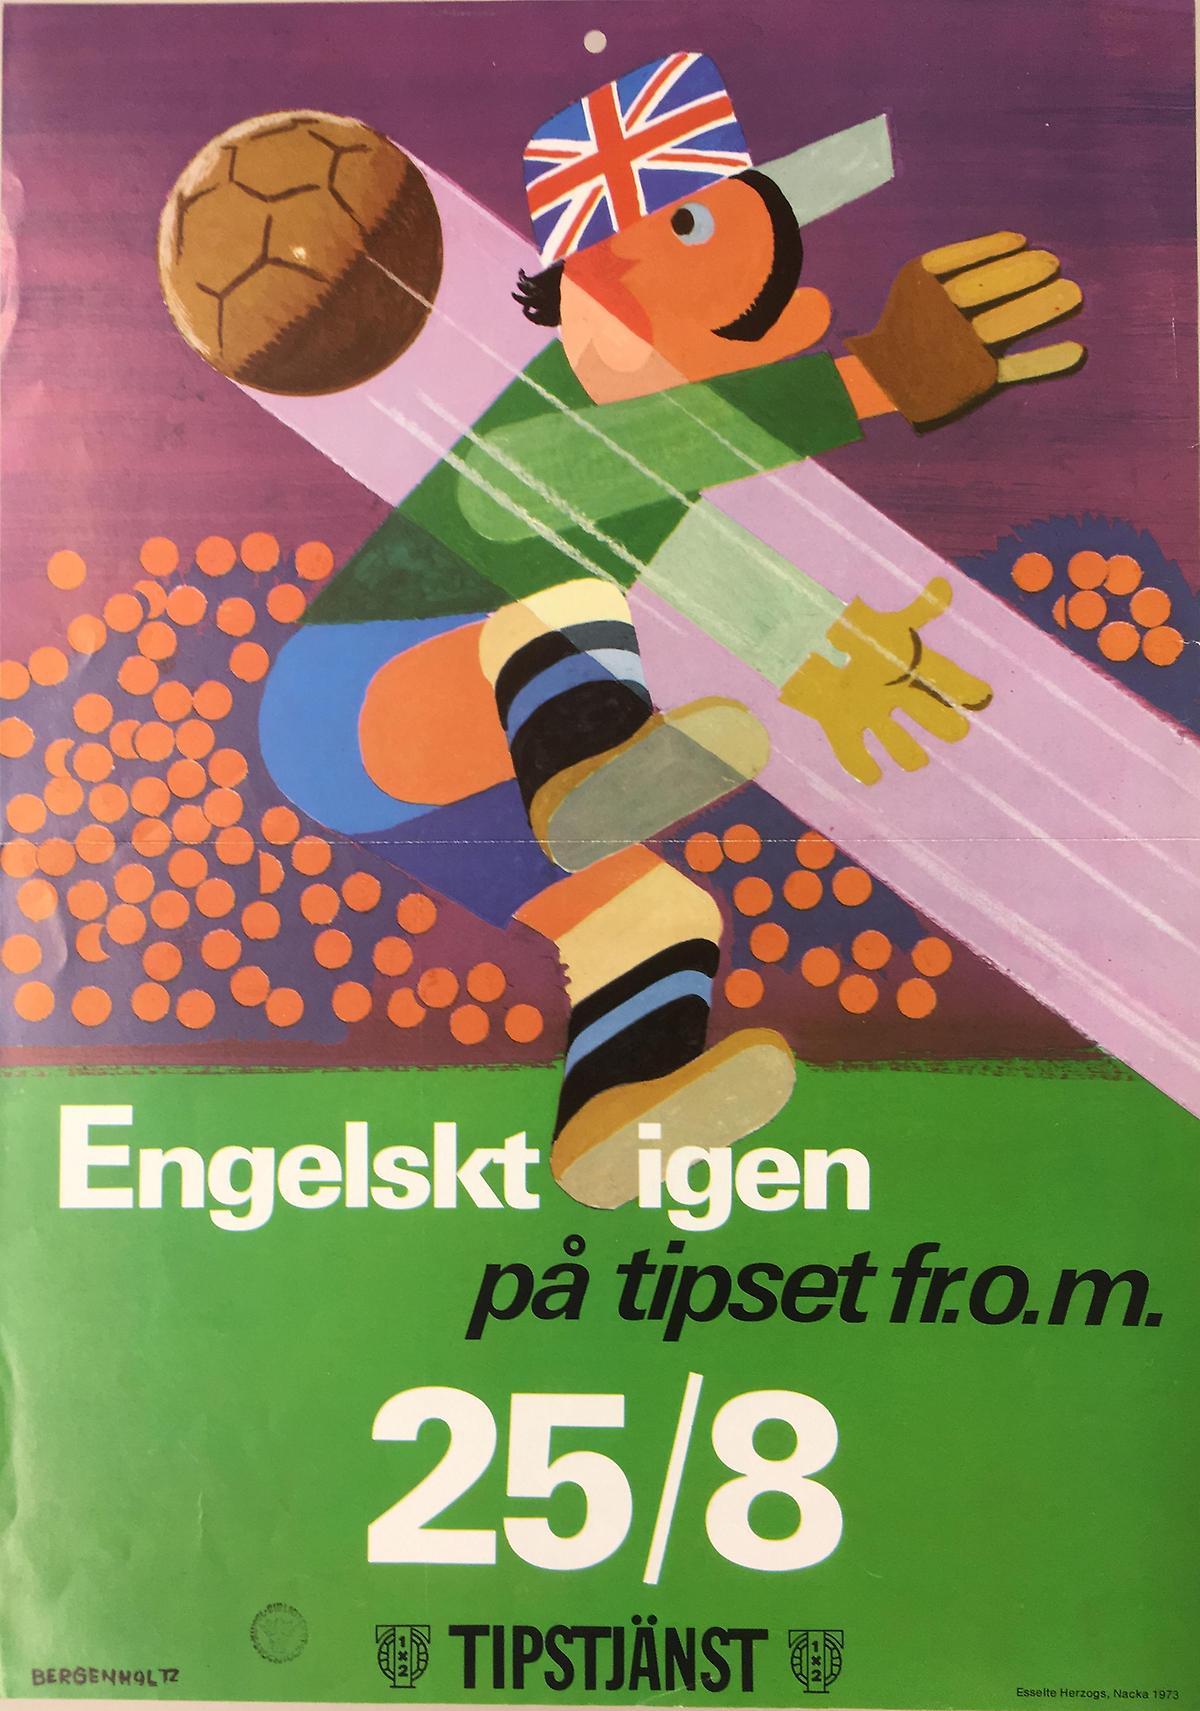 Tecknad fotbollsspelare iförd keps med mönster som brittiska flaggan. Text: Engelskt igen på tipset f.r.o.m. 25/8.